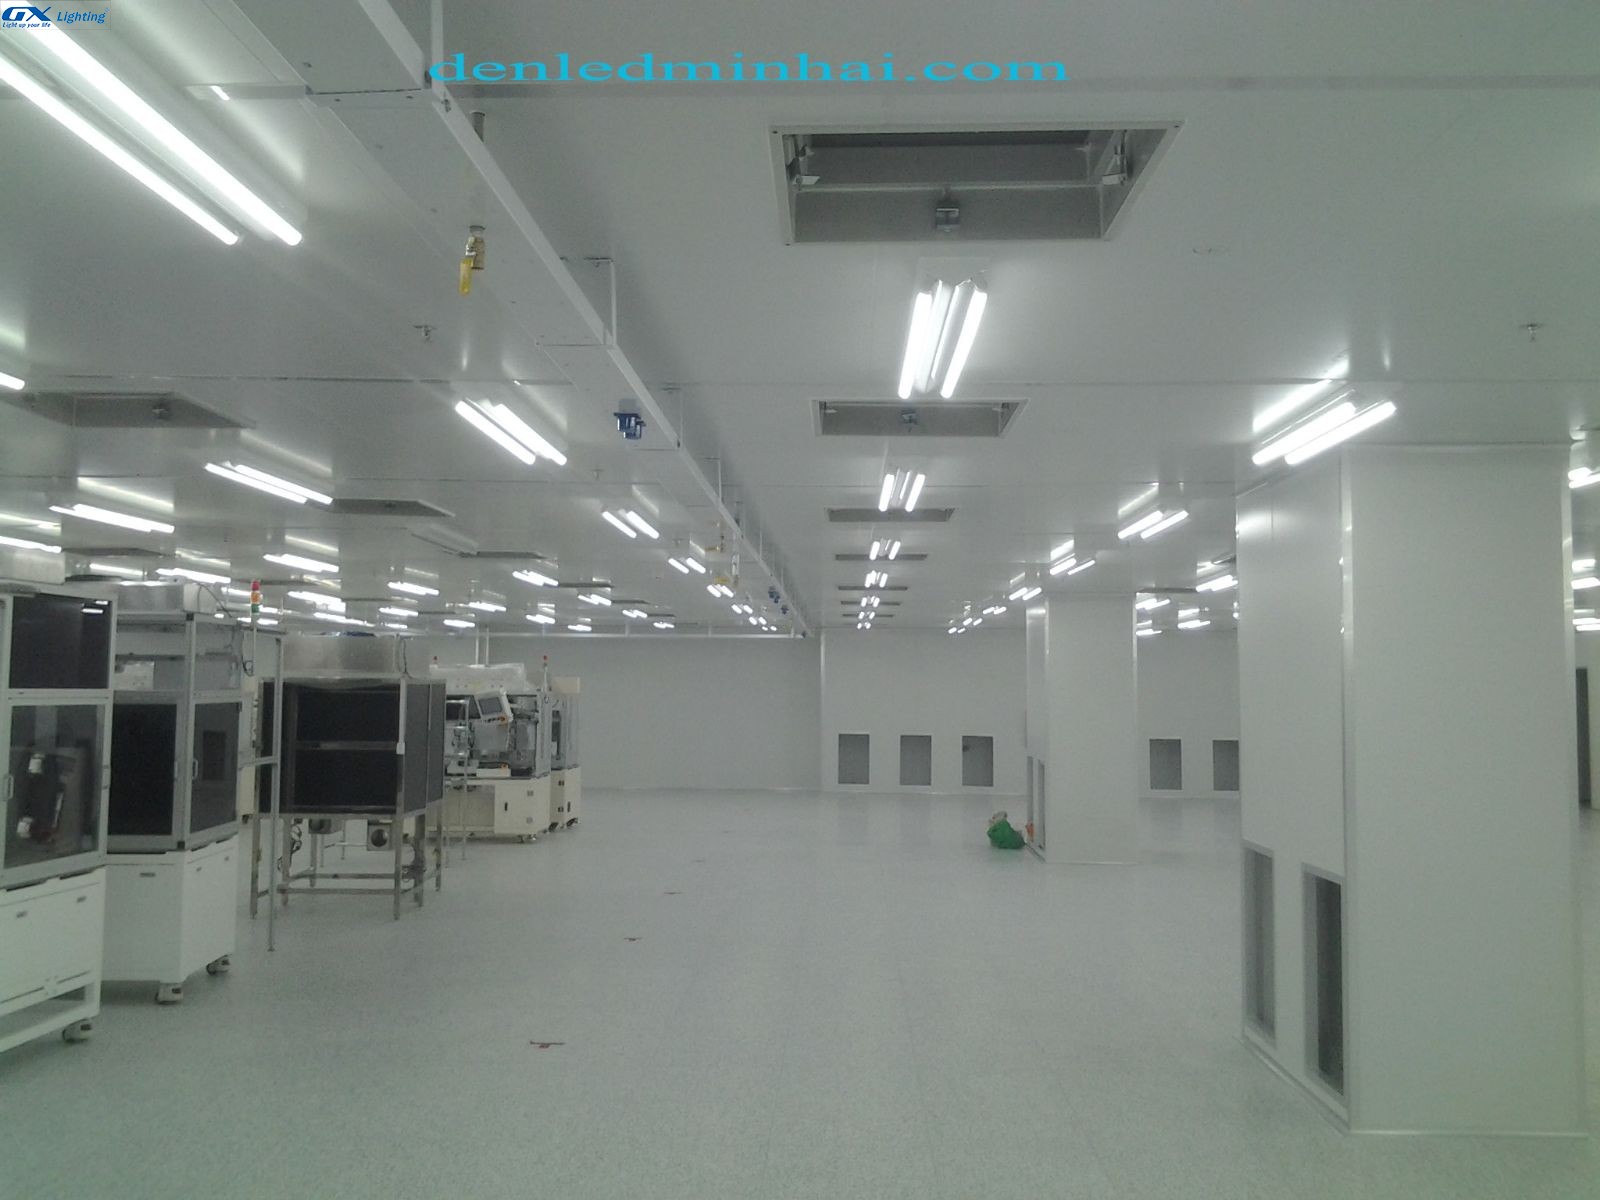 đèn led tuýp GX lighting tại nhà máy J World